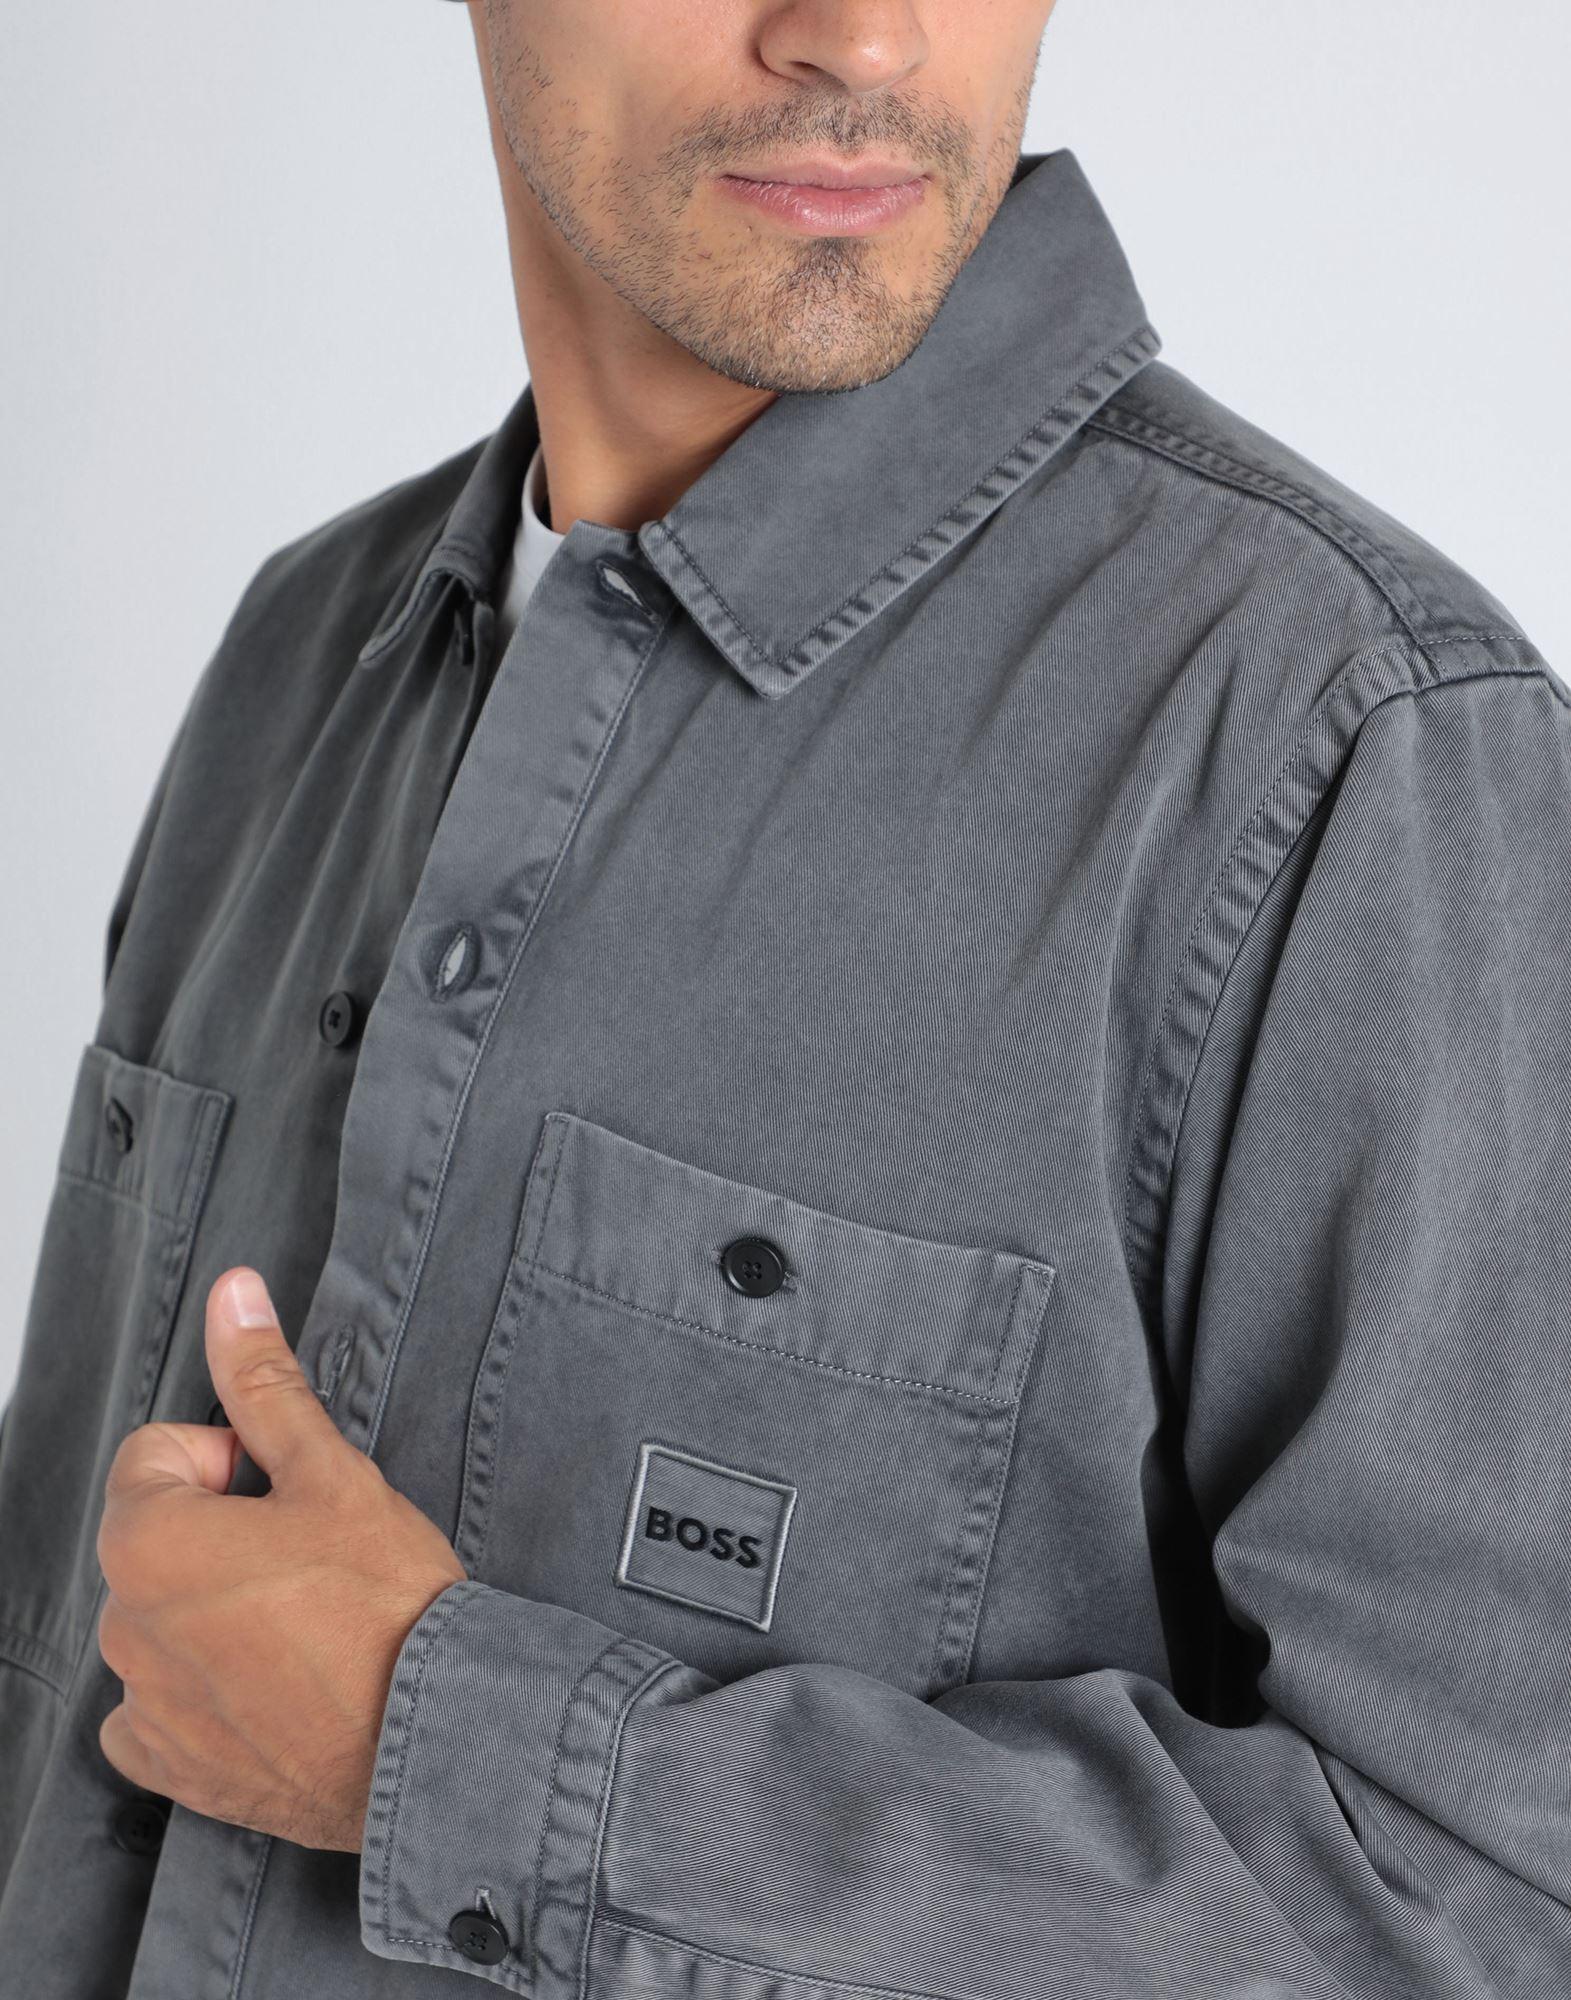 BOSS by HUGO BOSS Denim Shirt in Gray for Men | Lyst